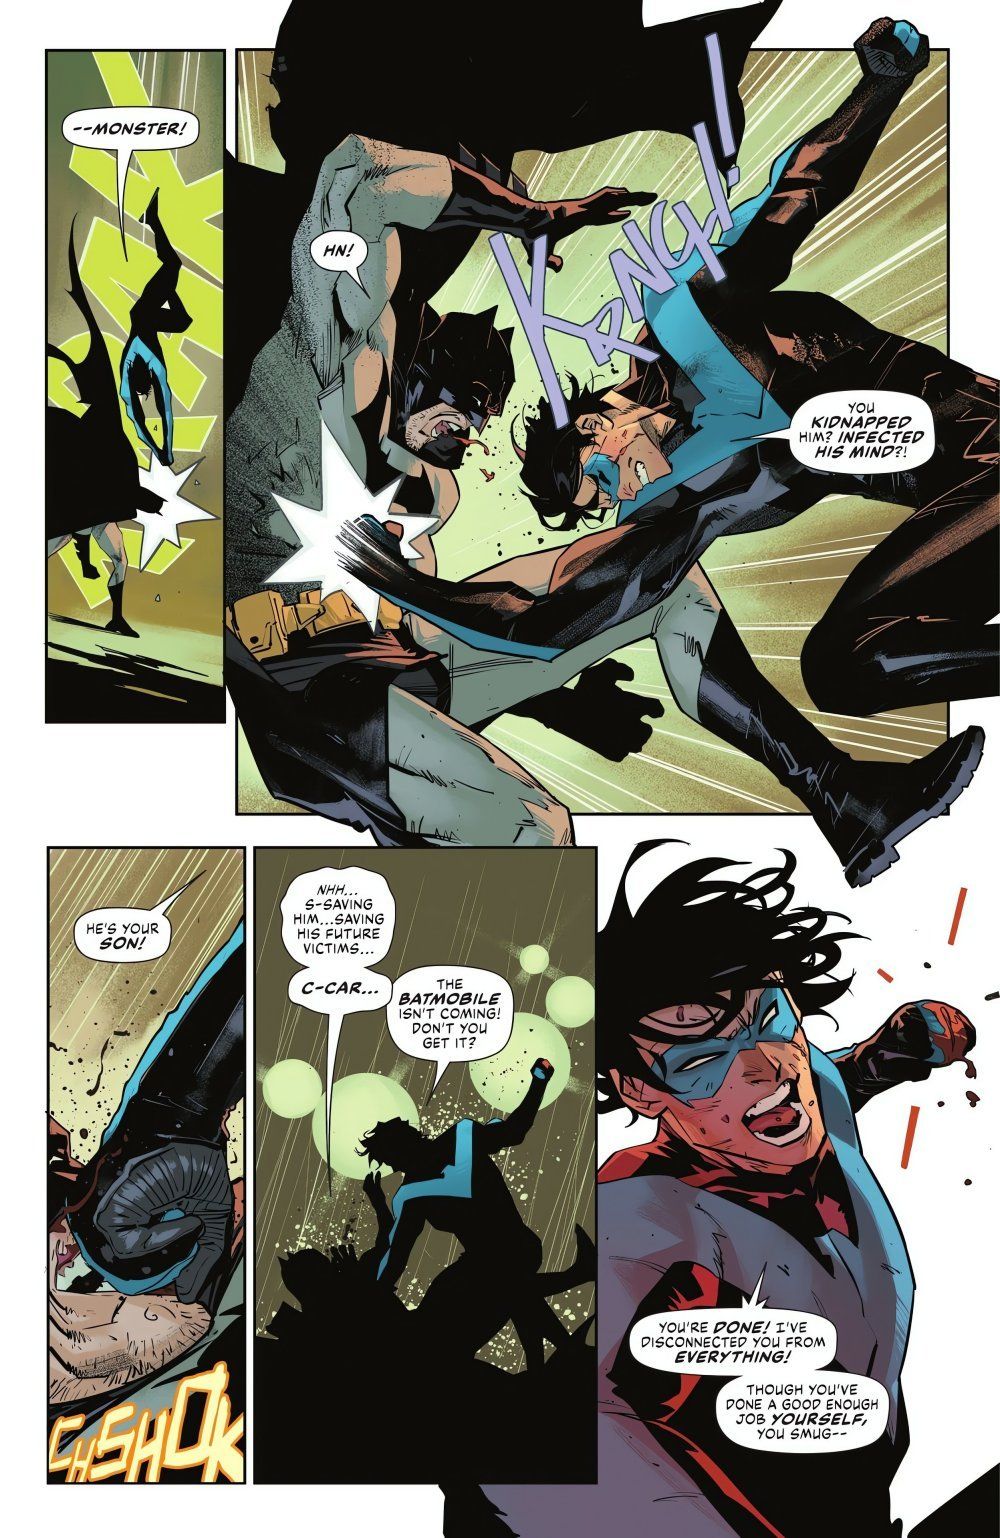 Panels aus Batman Nr. 138, Nightwing besiegt Batman in einem Straßenkampf